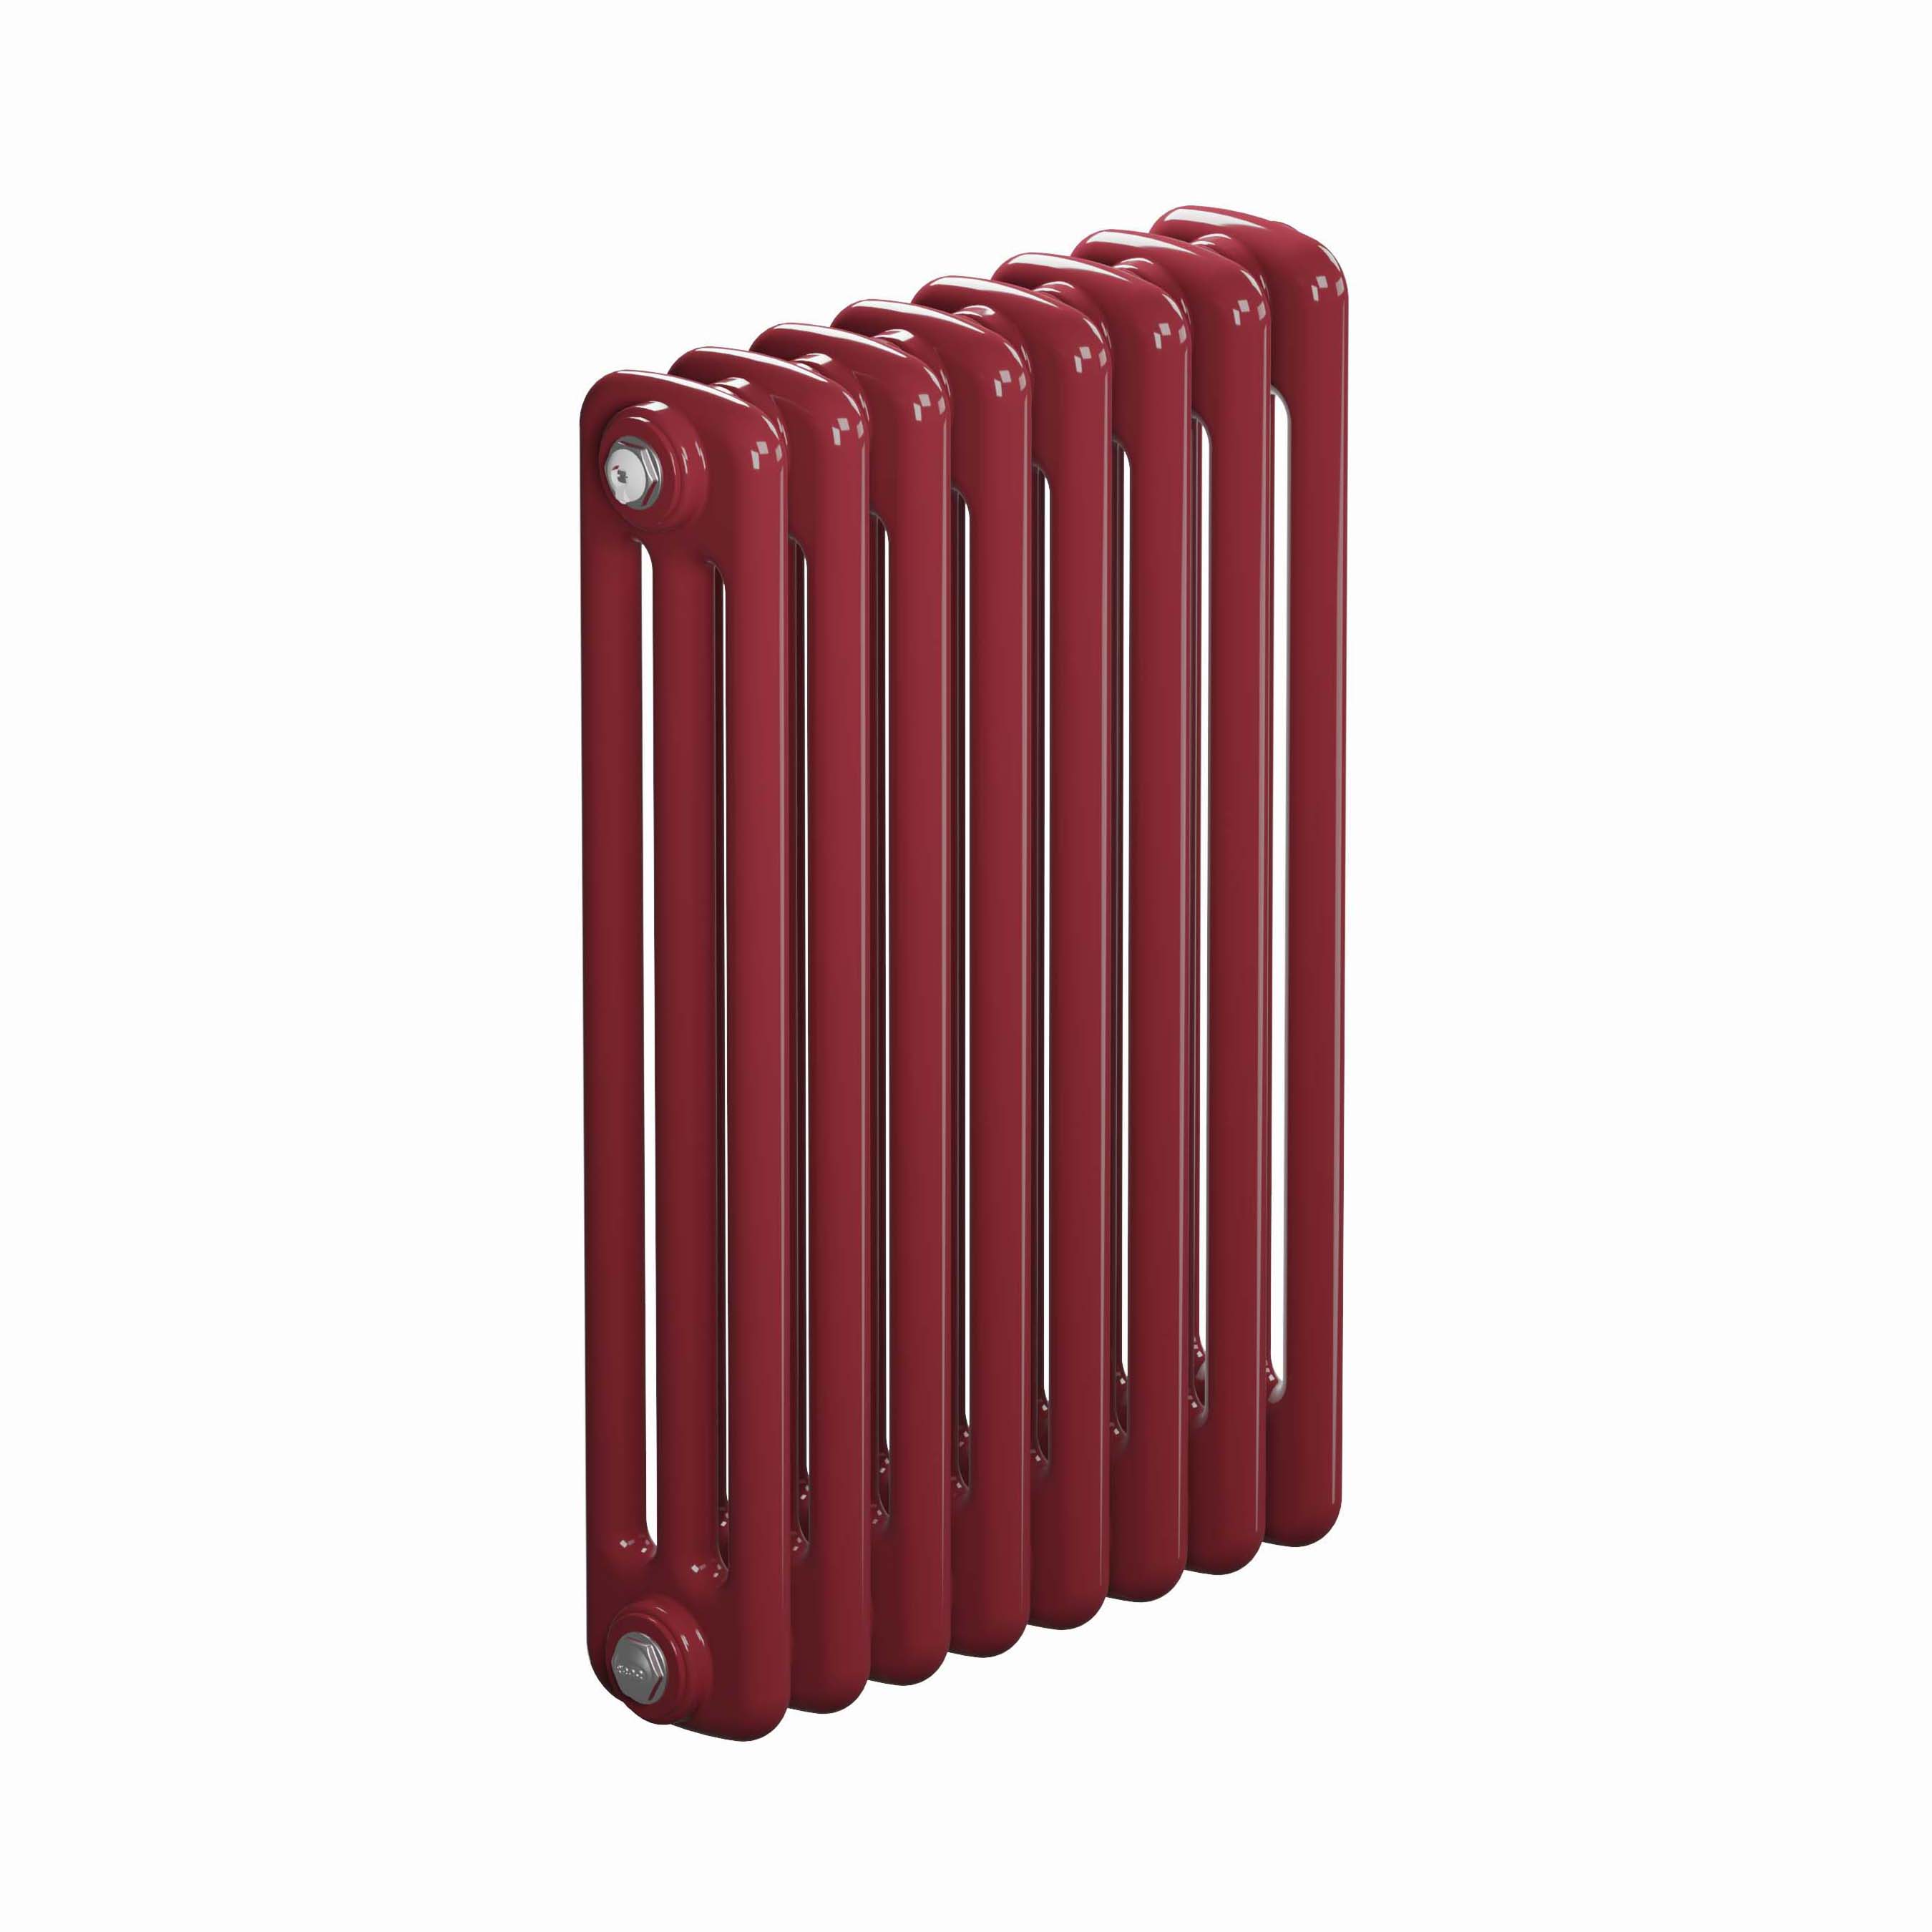 Трубчатый радиатор Rifar Tubog 3057, 4 секции, 3-колончатый, красно-коричневый (бордо), D1